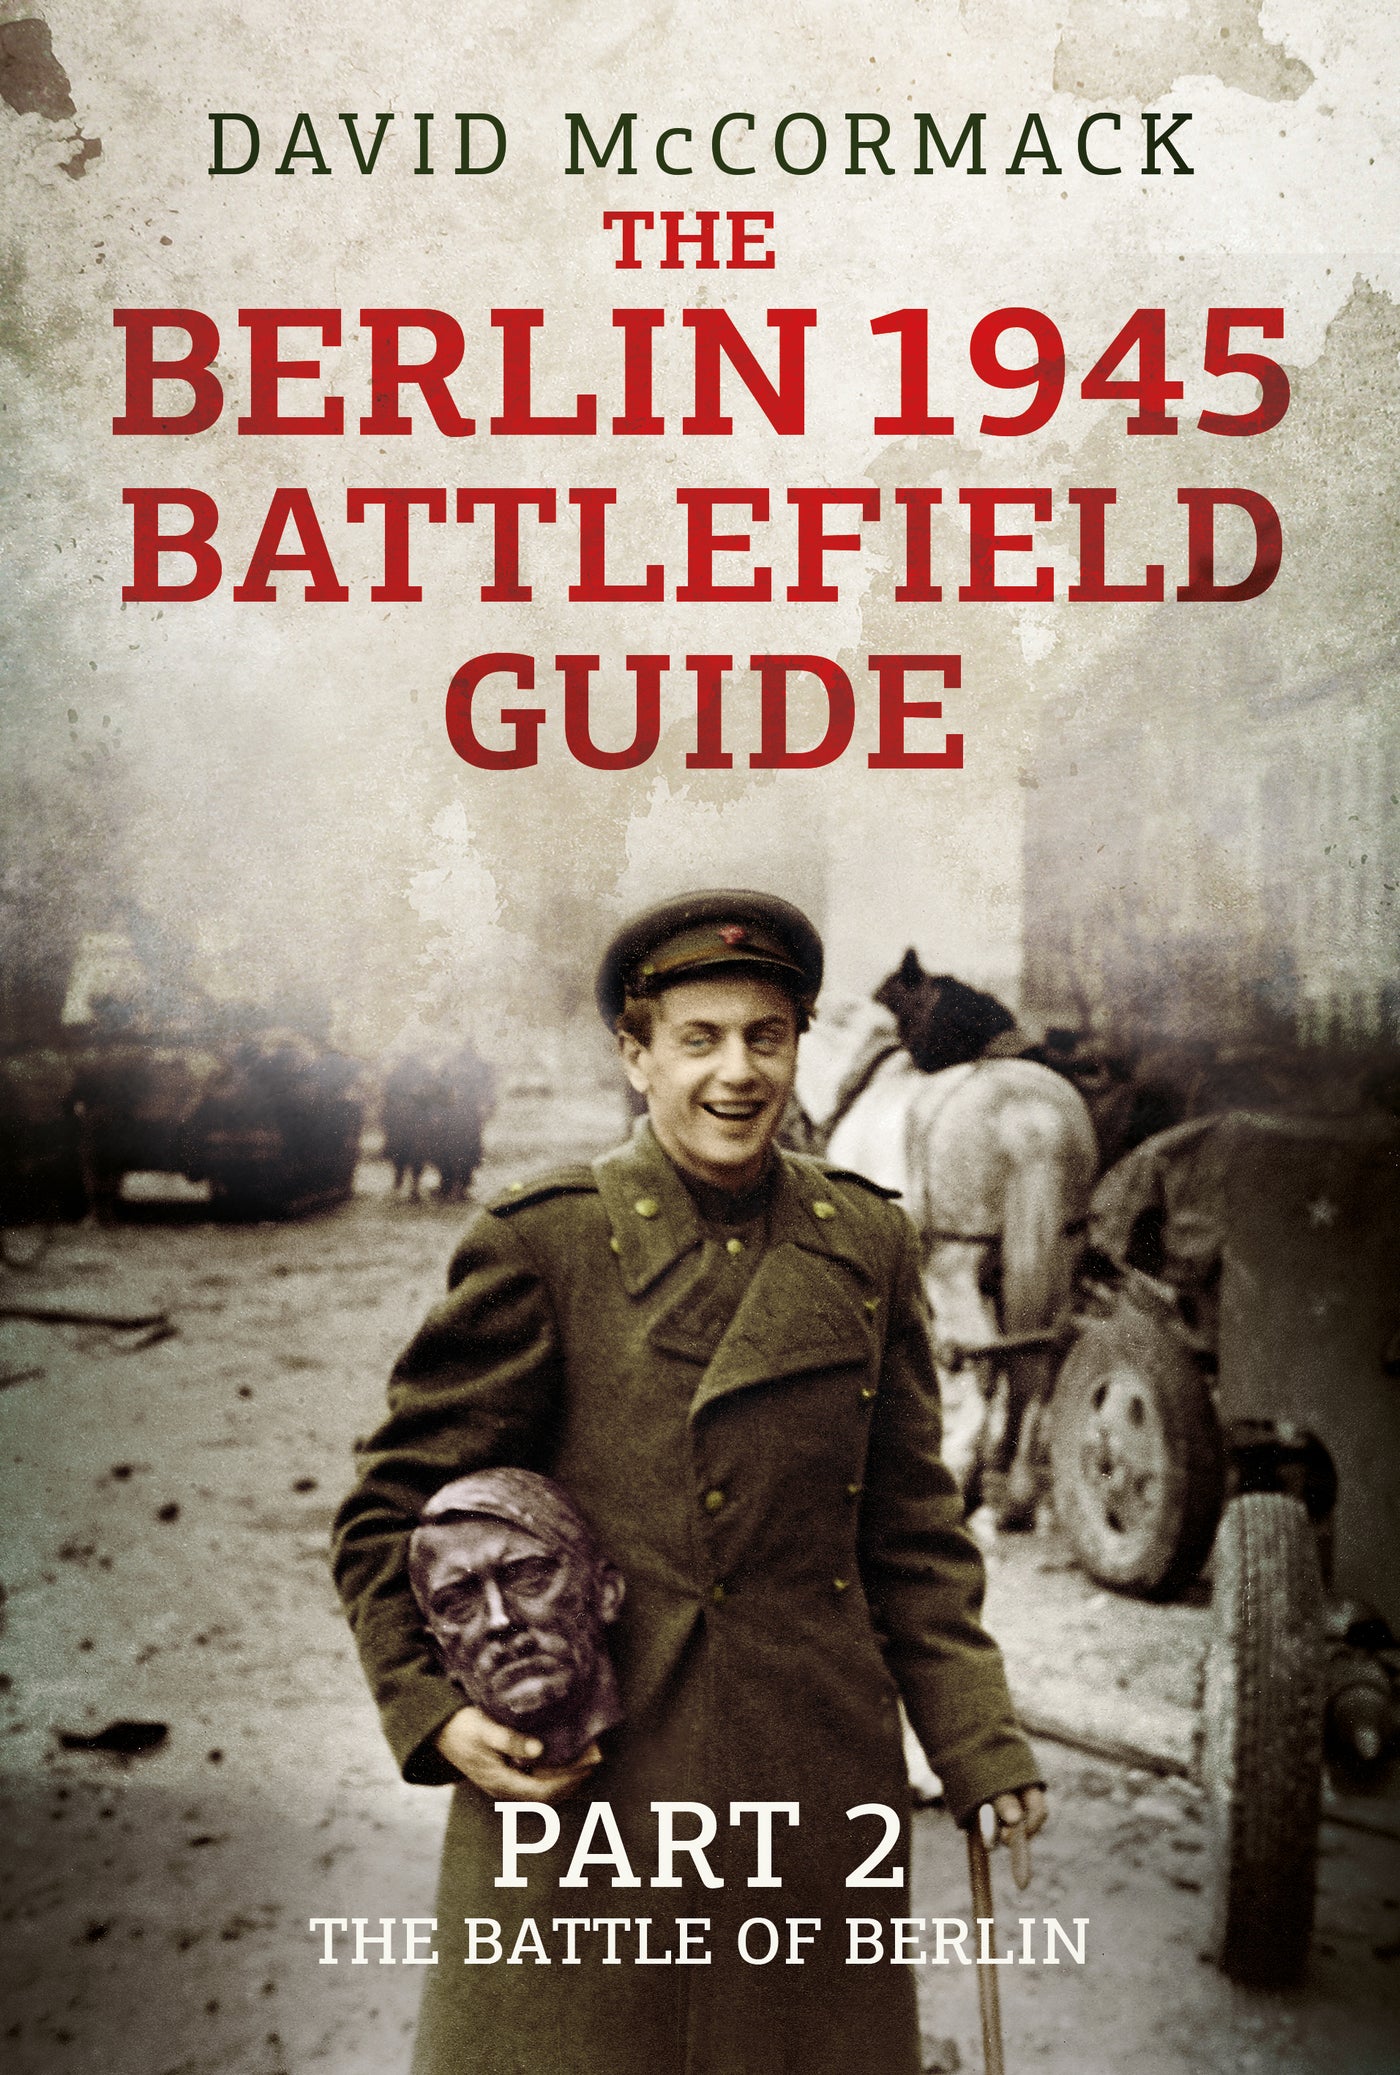 Der Berlin 1945 Battlefield Guide 